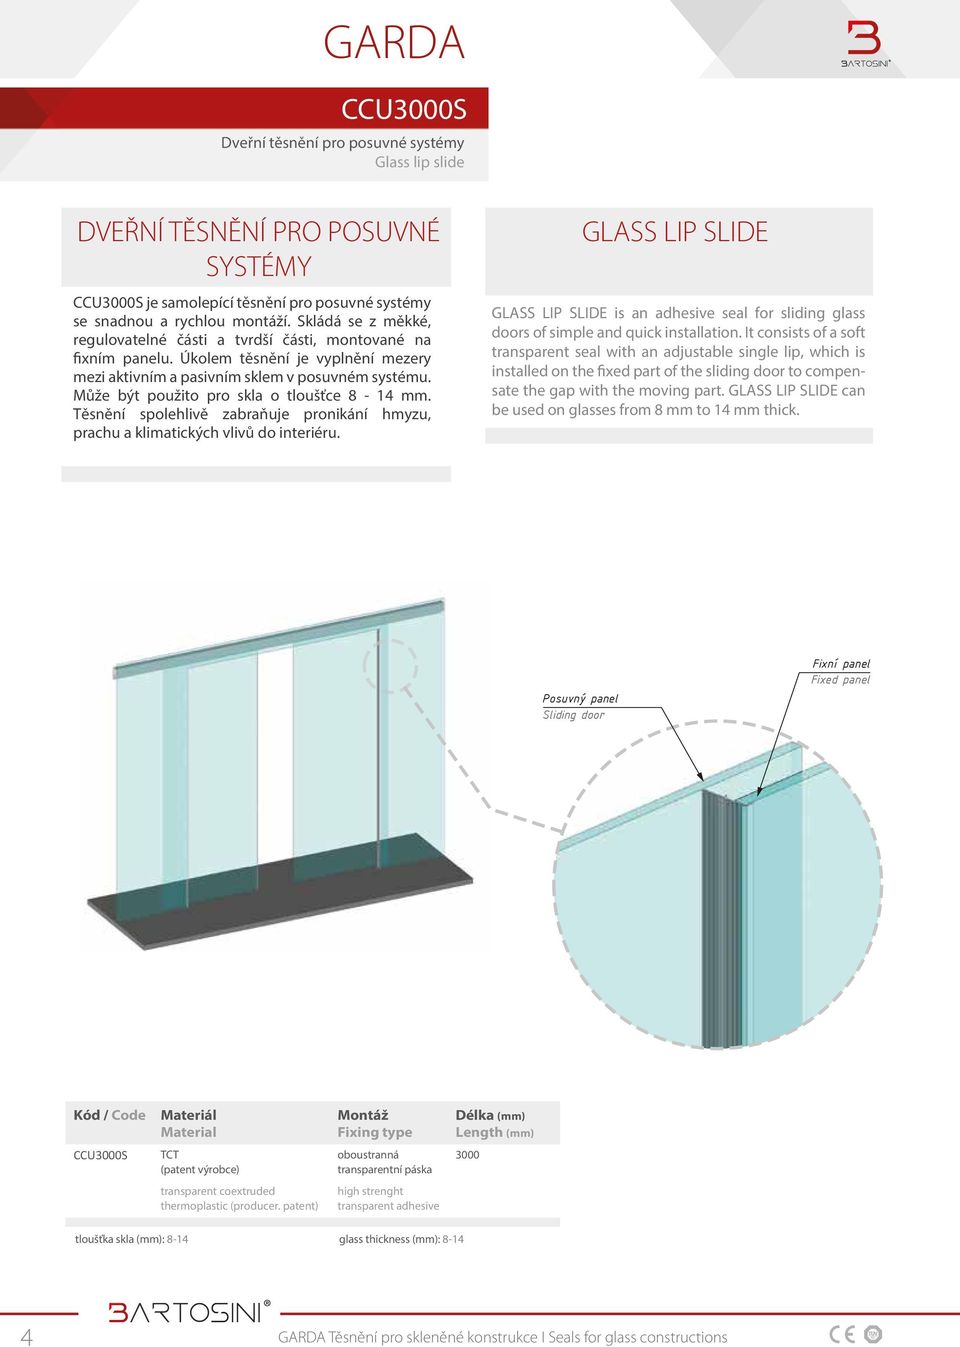 Může být použito pro skla o tloušťce 8-14 mm. Těsnění spolehlivě zabraňuje pronikání hmyzu, prachu a klimatických vlivů do interiéru.